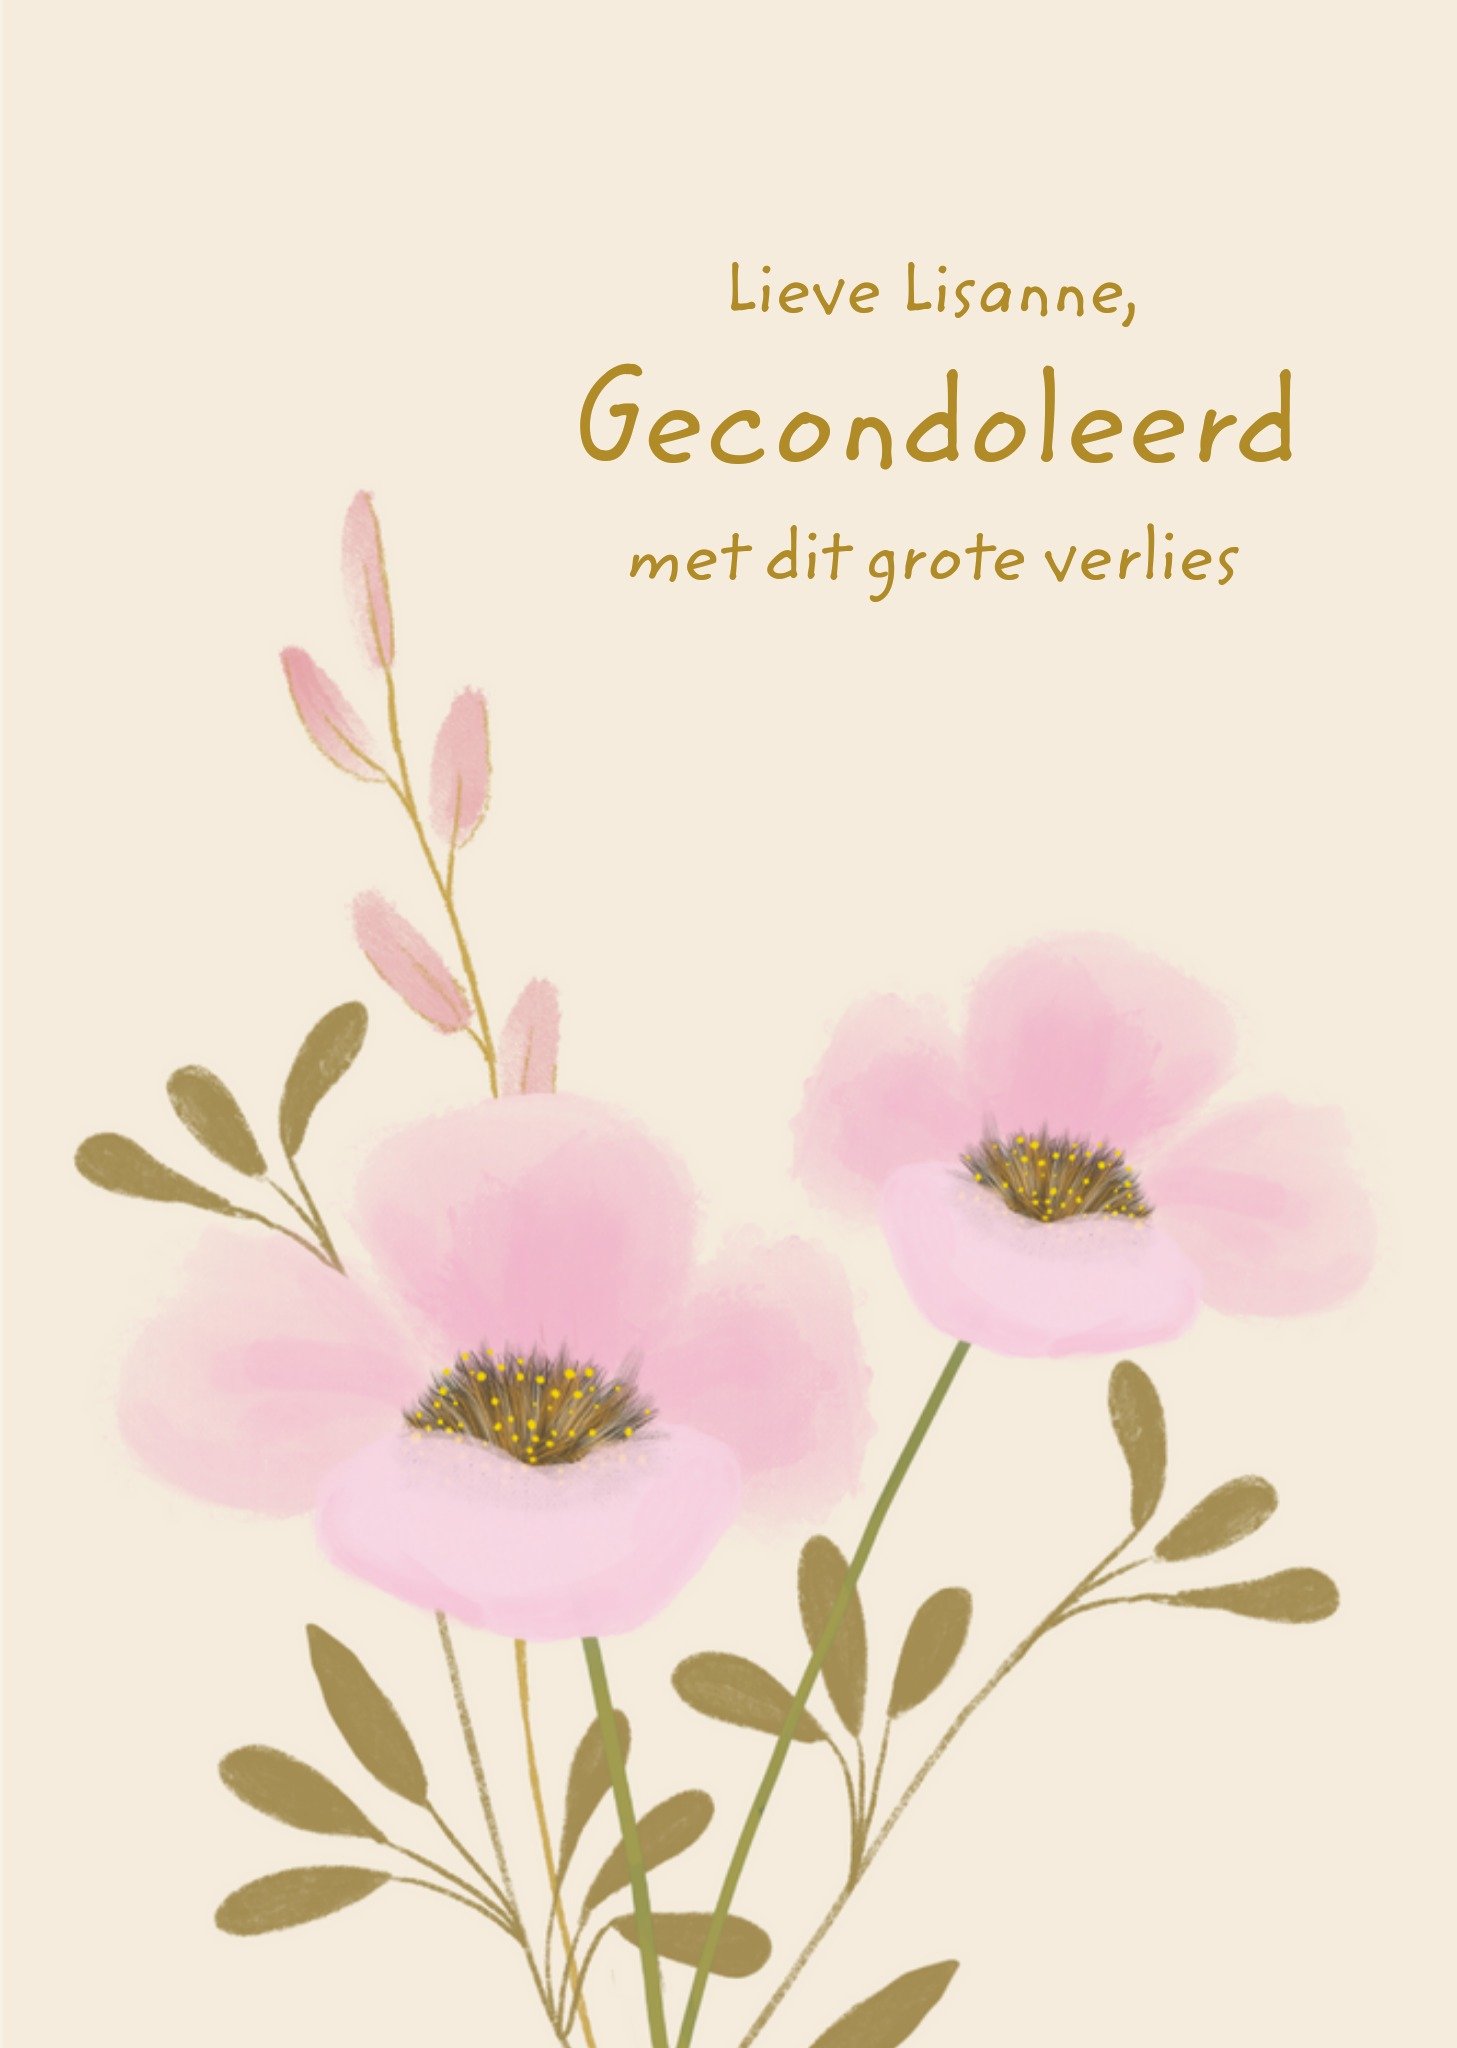 Tsjip - Condoleancekaart - Roze bloemen - Met tekst